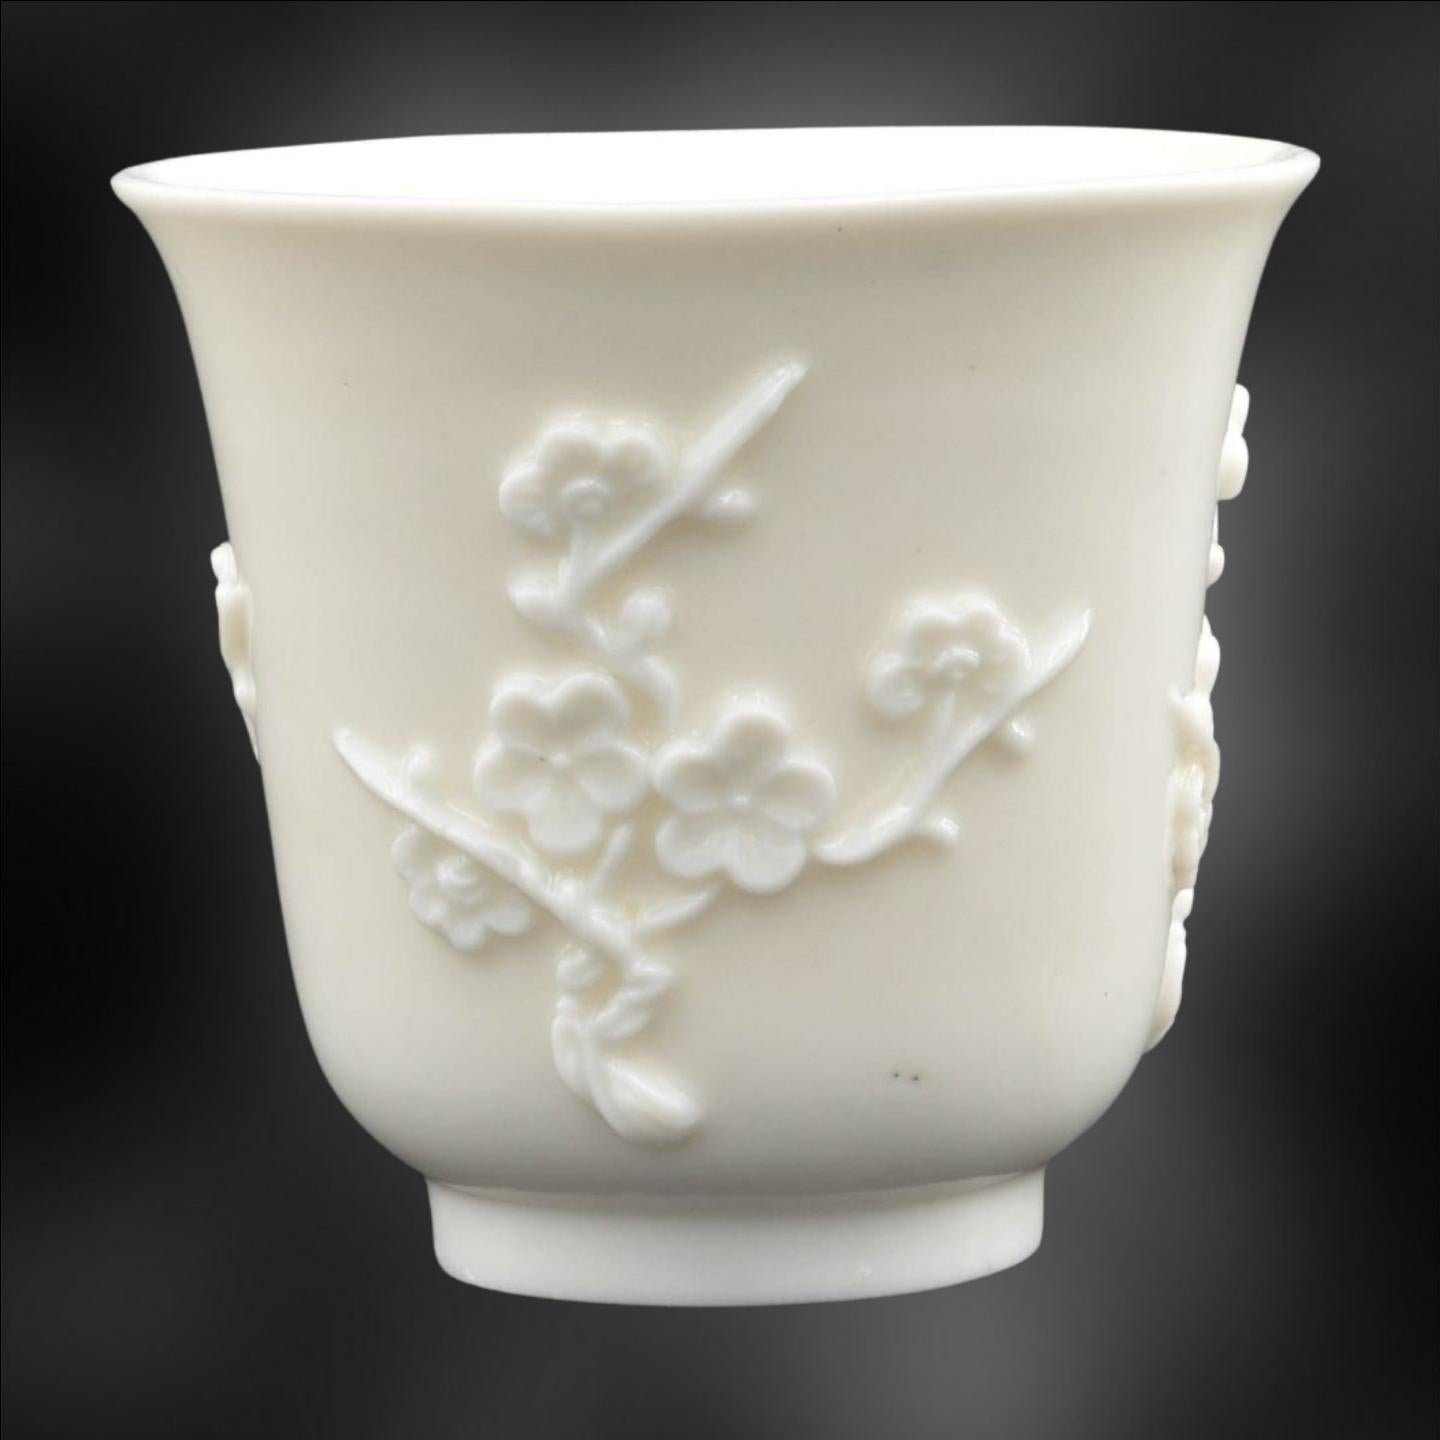 Un gobelet étonnant, dans la porcelaine luxuriante de Dehua. Un blanc anormalement brillant pour Dehua, qui est très attrayant.

Un grand gobelet, de forme agréable, avec une décoration simple de Prunus. La forme utilisée est similaire à celle